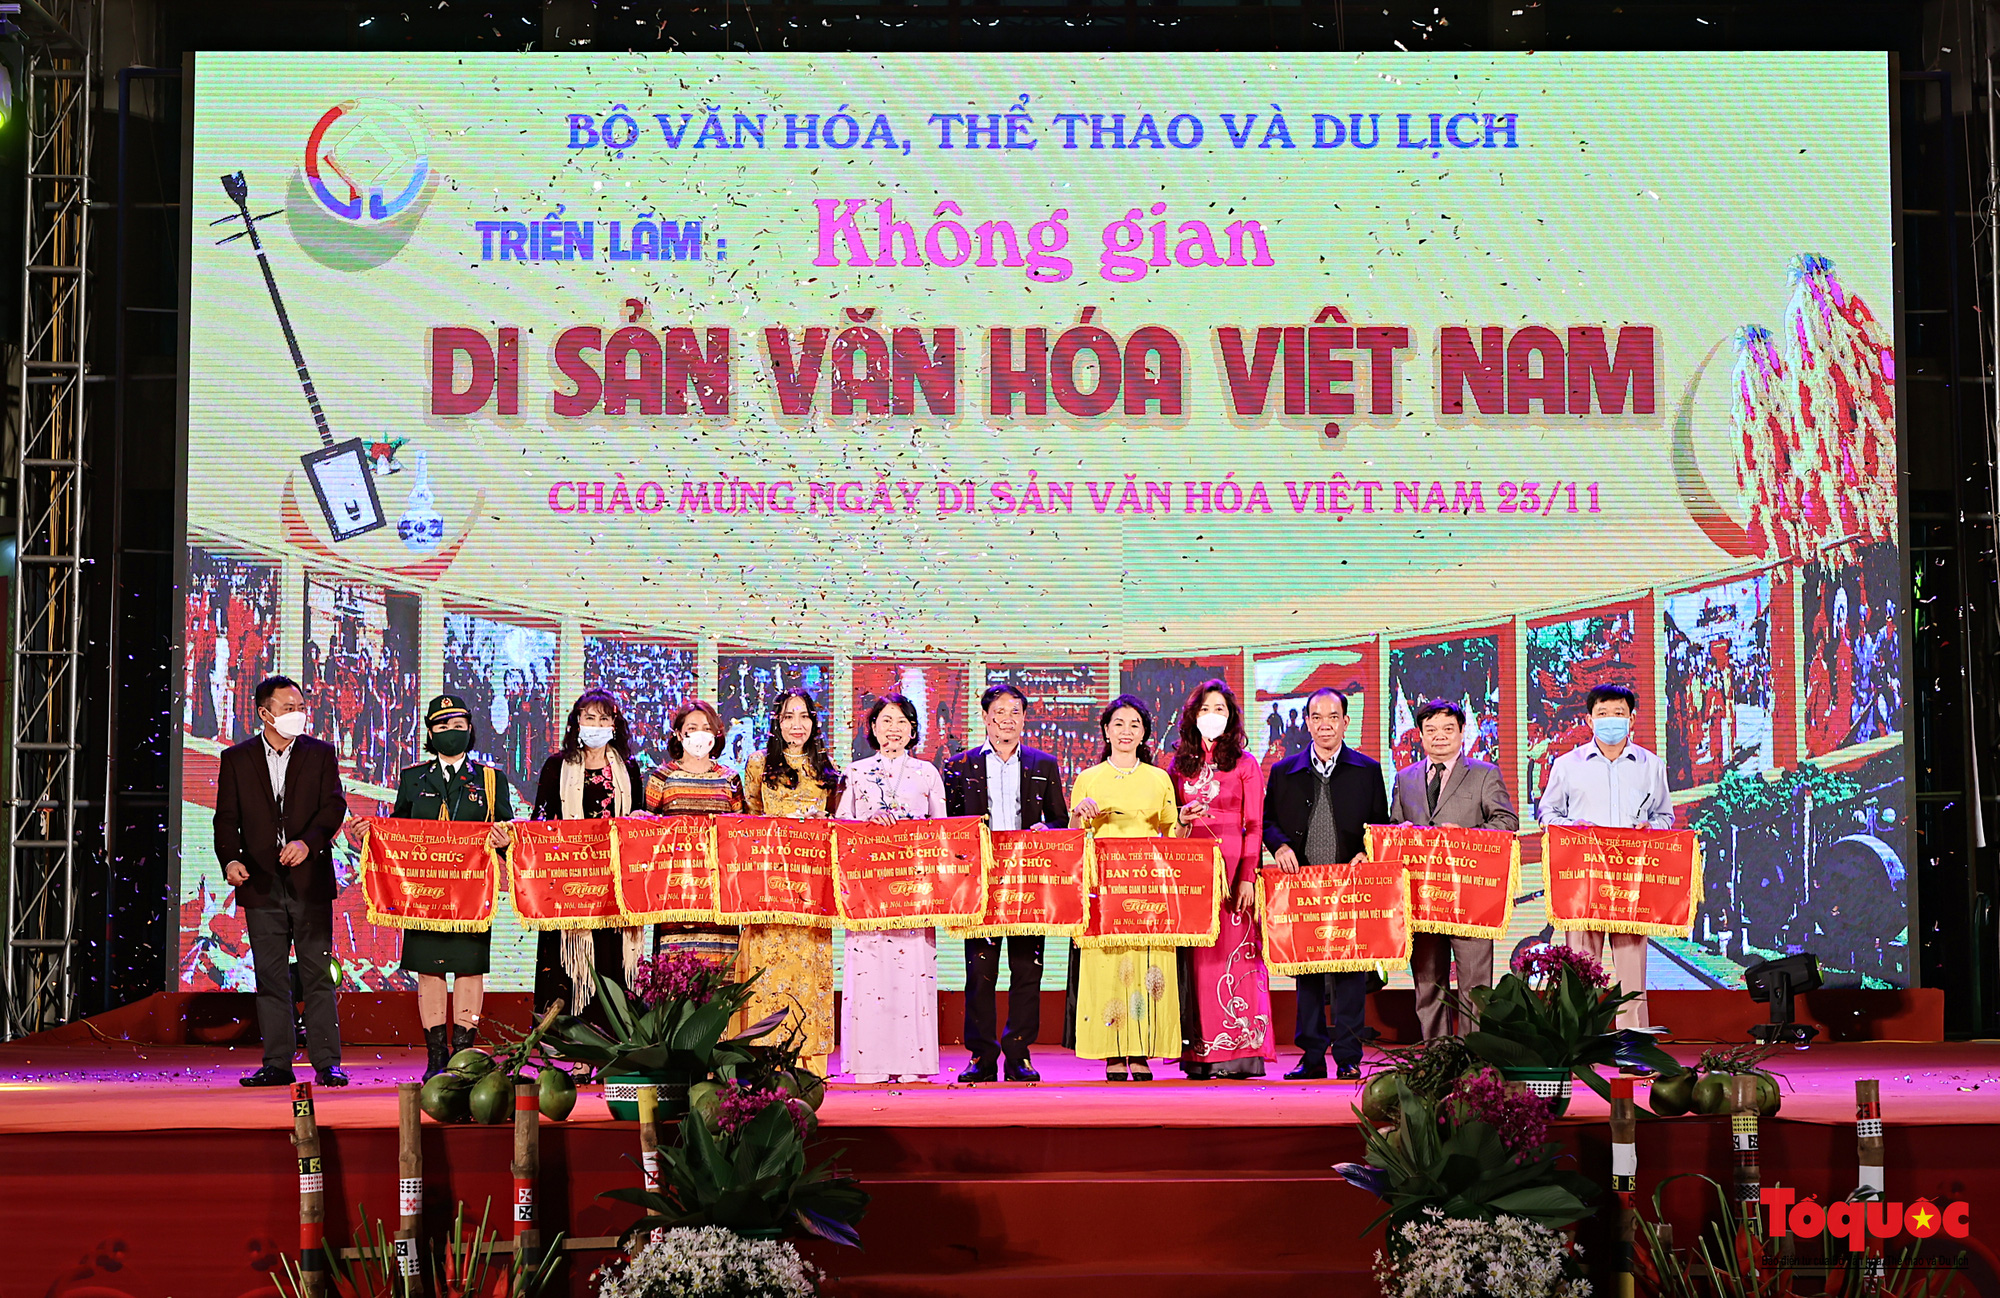 Khai mạc triển lãm “Không gian Di sản văn hóa Việt Nam” tại Hà Nội - Ảnh 3.